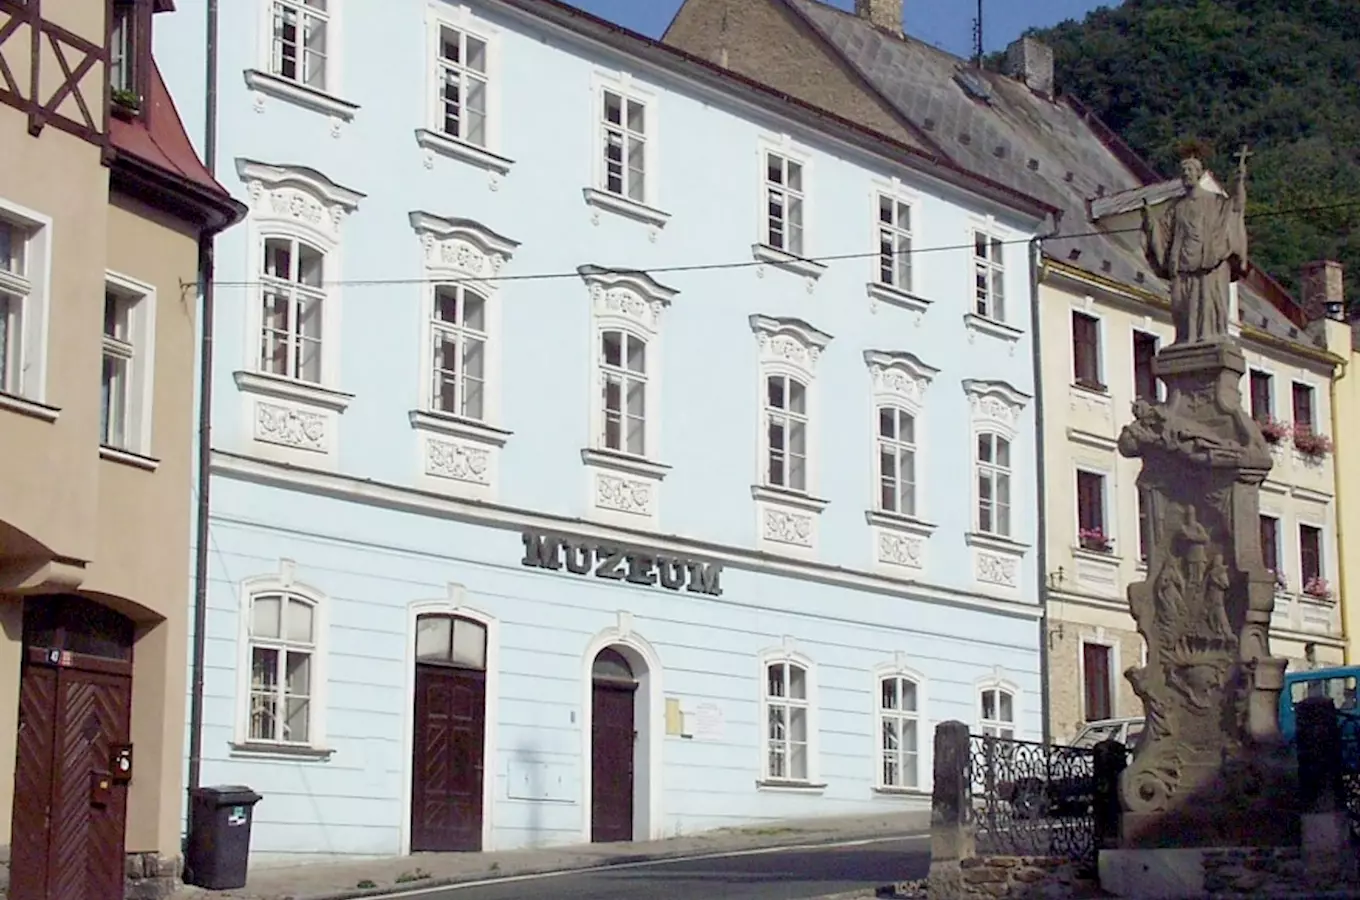 Muzeum v Krupce – uzavřeno z důvodu rekonstrukce